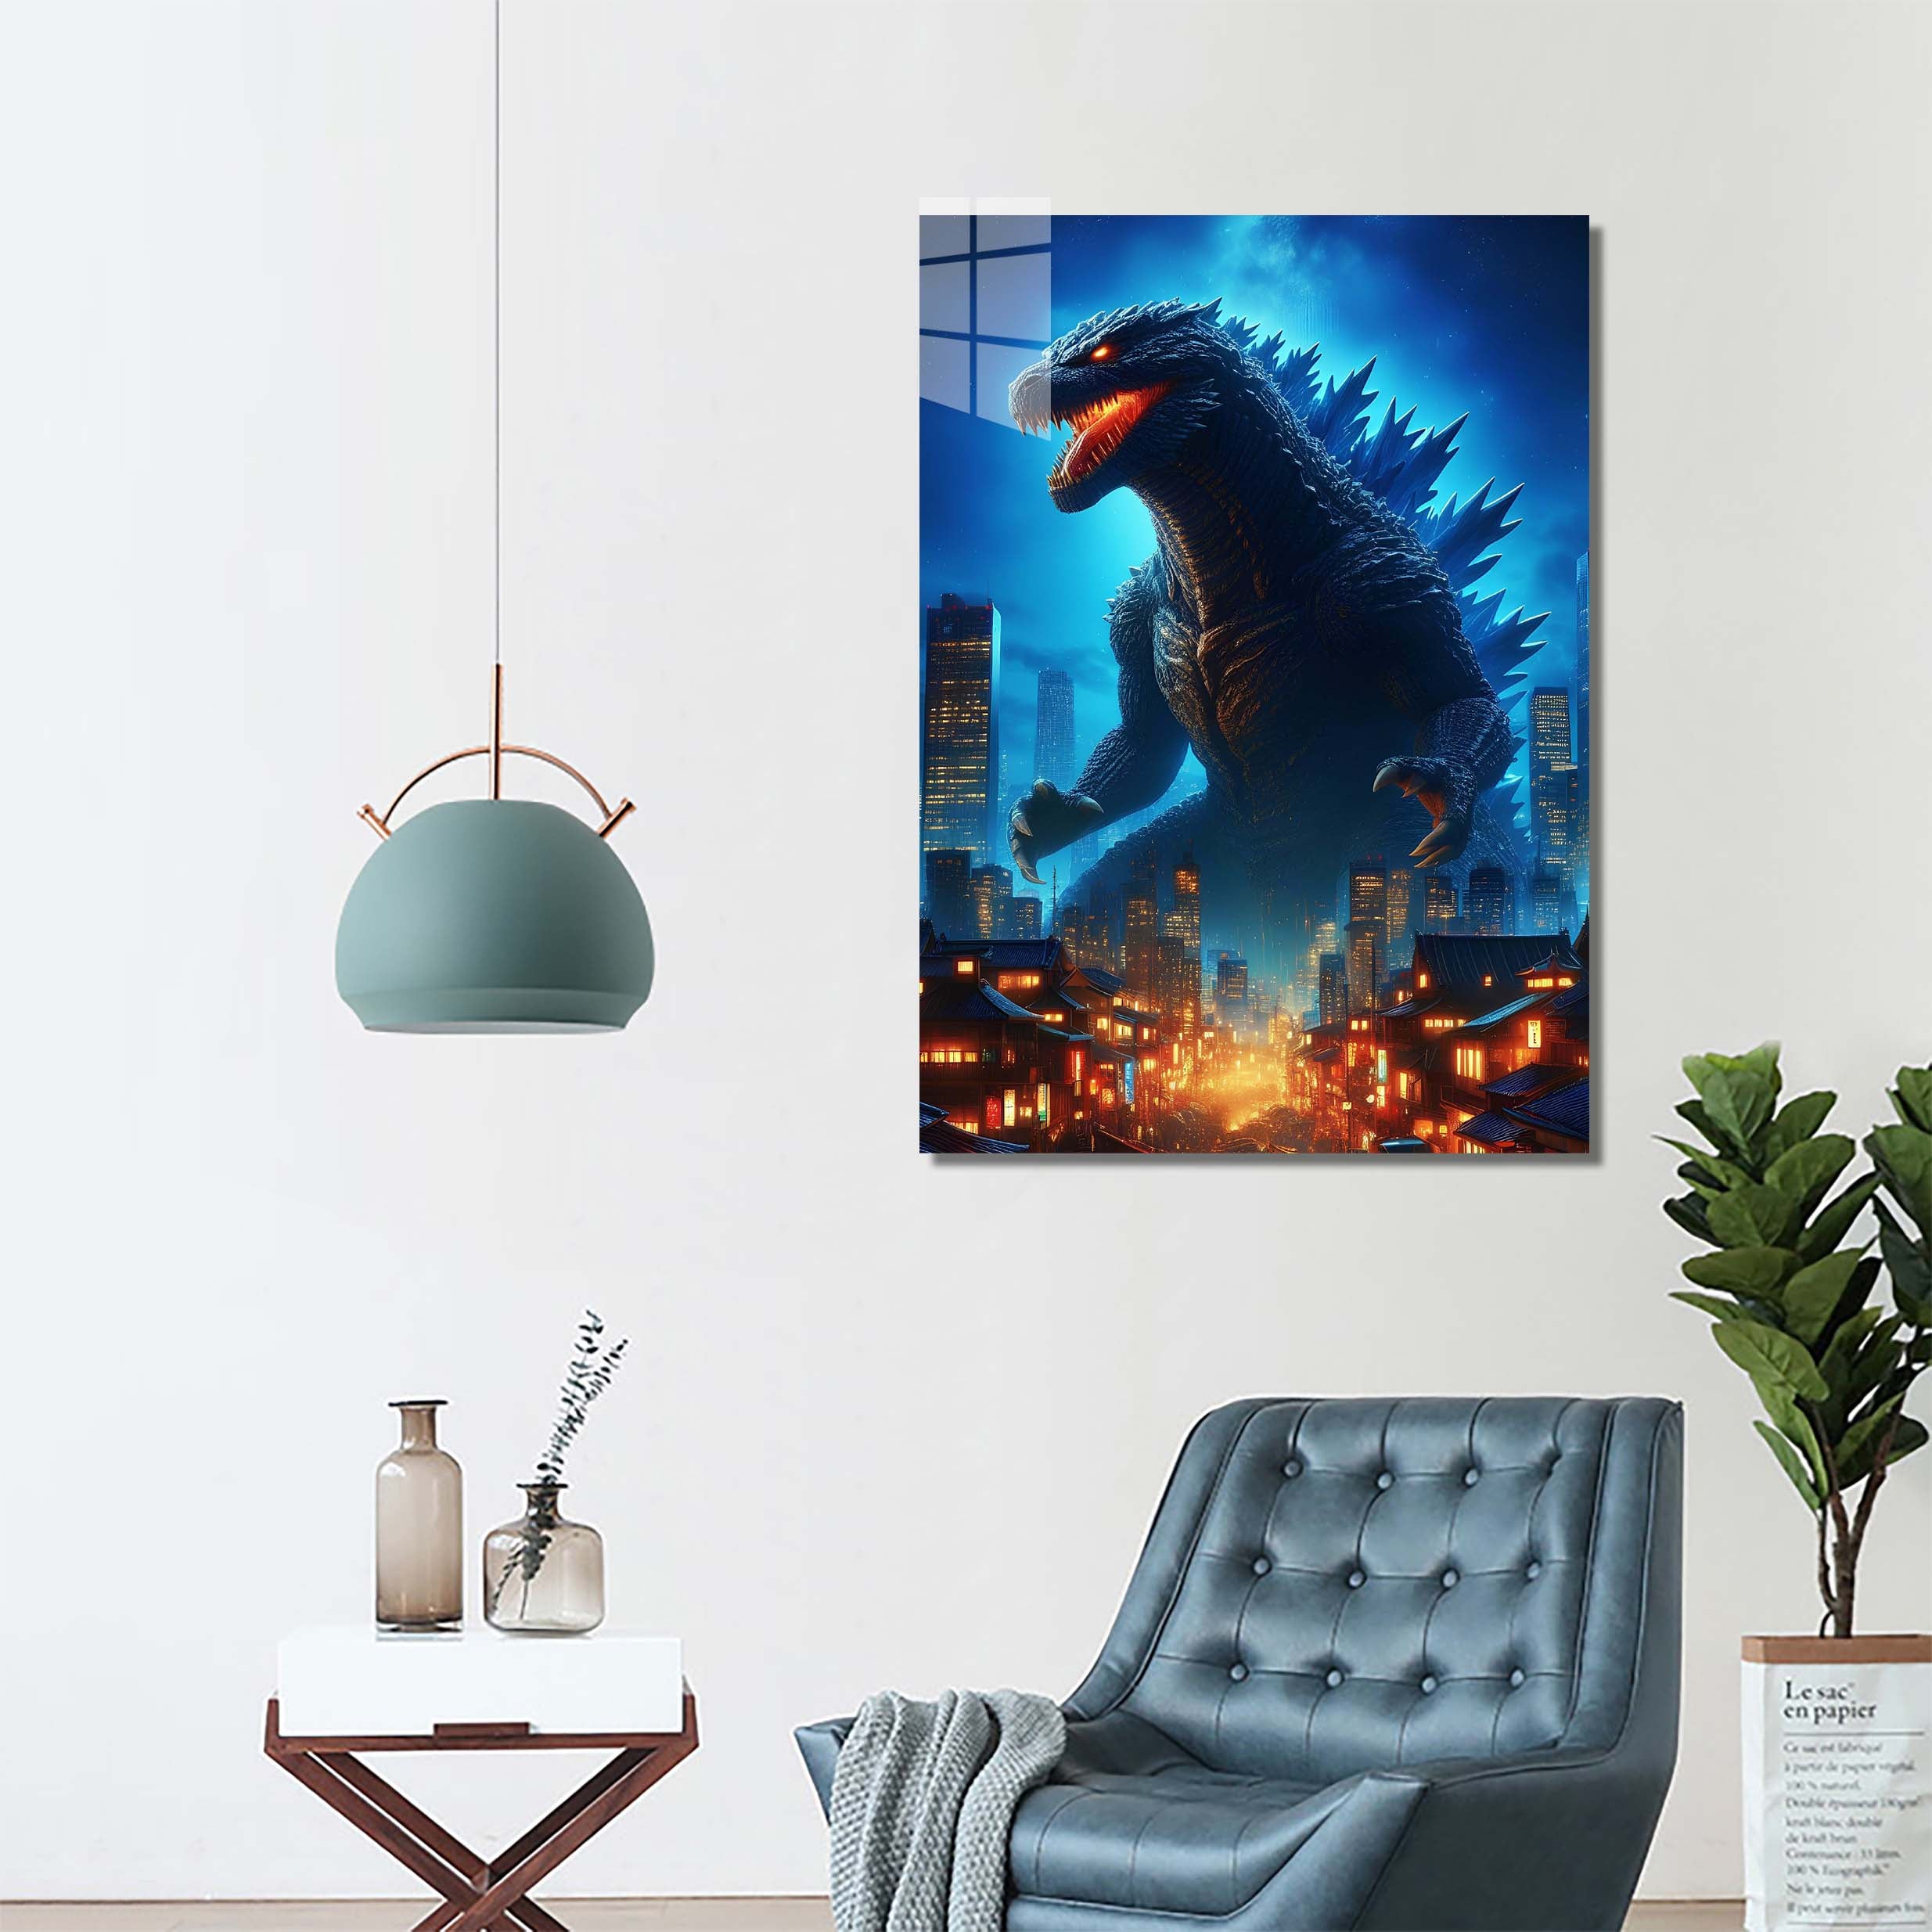 Godzilla in town-designed by @RITVIK TAKKAR